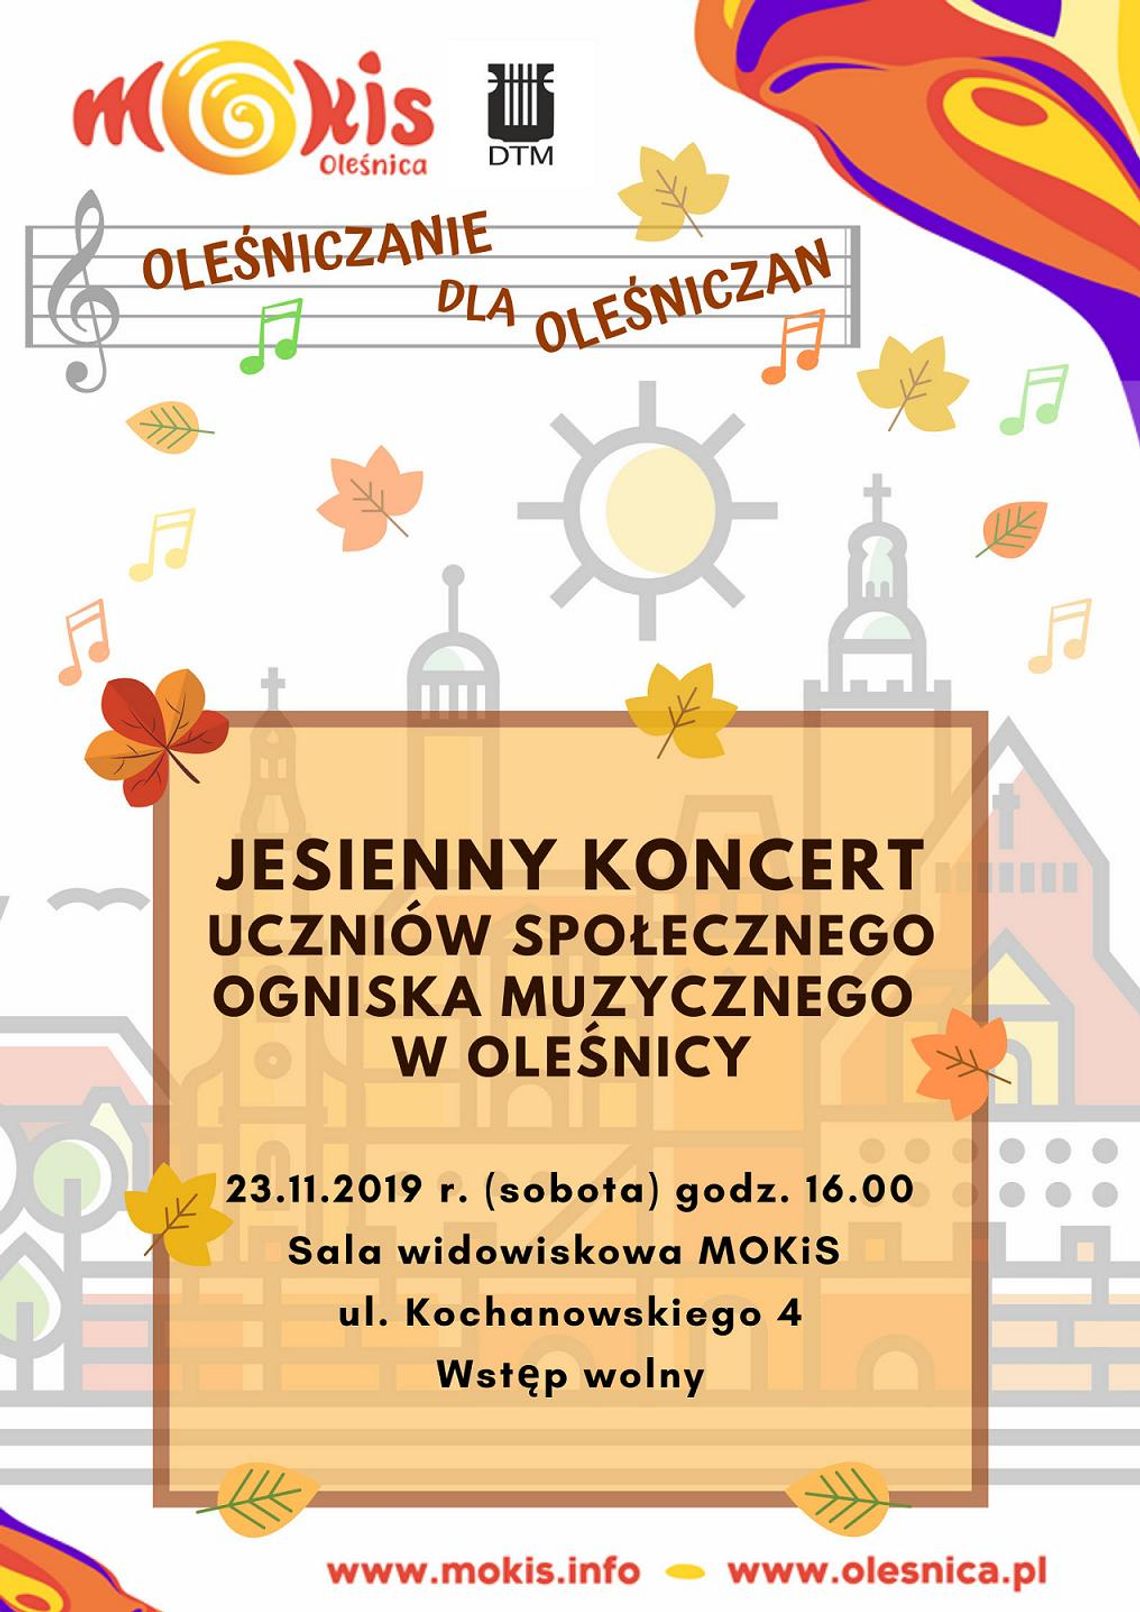 Jesienna sonata w Oleśnicy